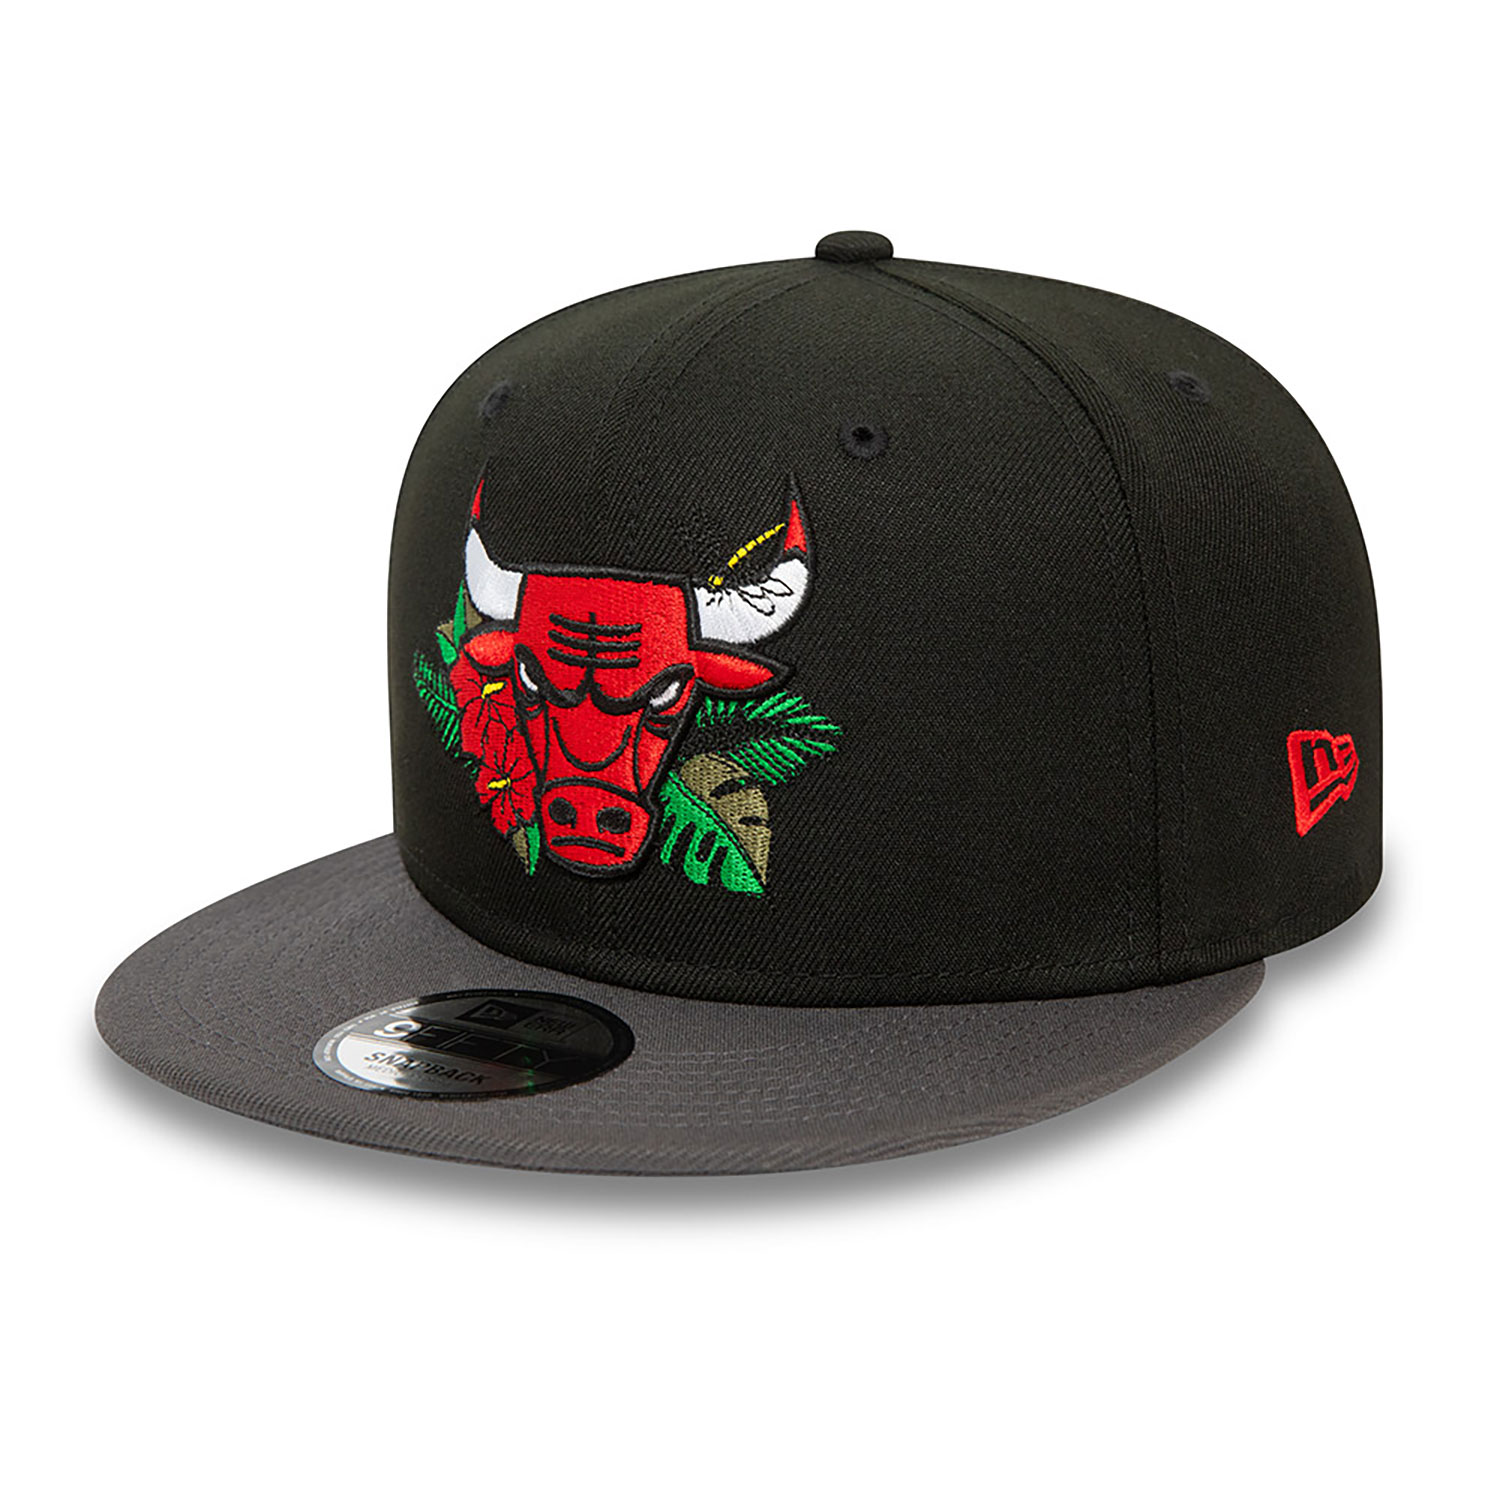 Chicago Bulls NBA Floral Black 9FIFTY Snapback Cap